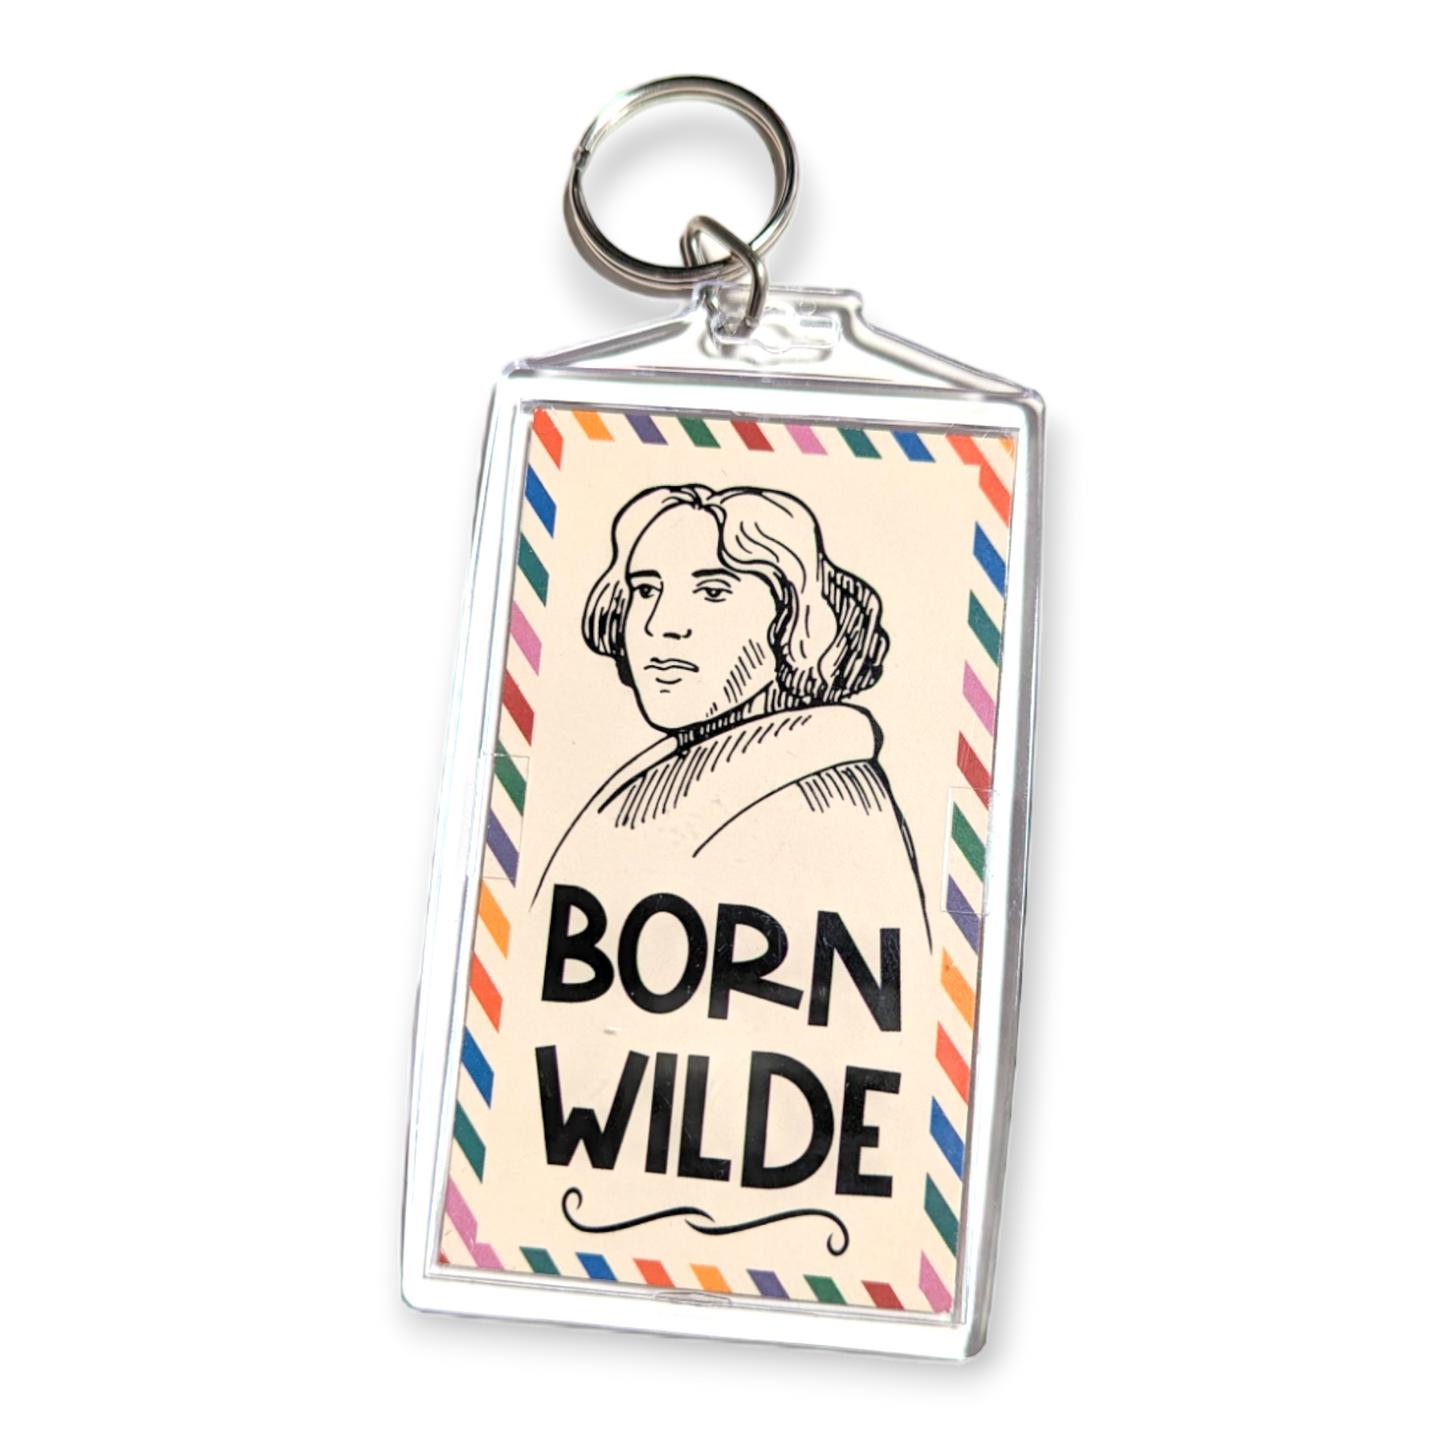 Oscar "Born" Wilde Author